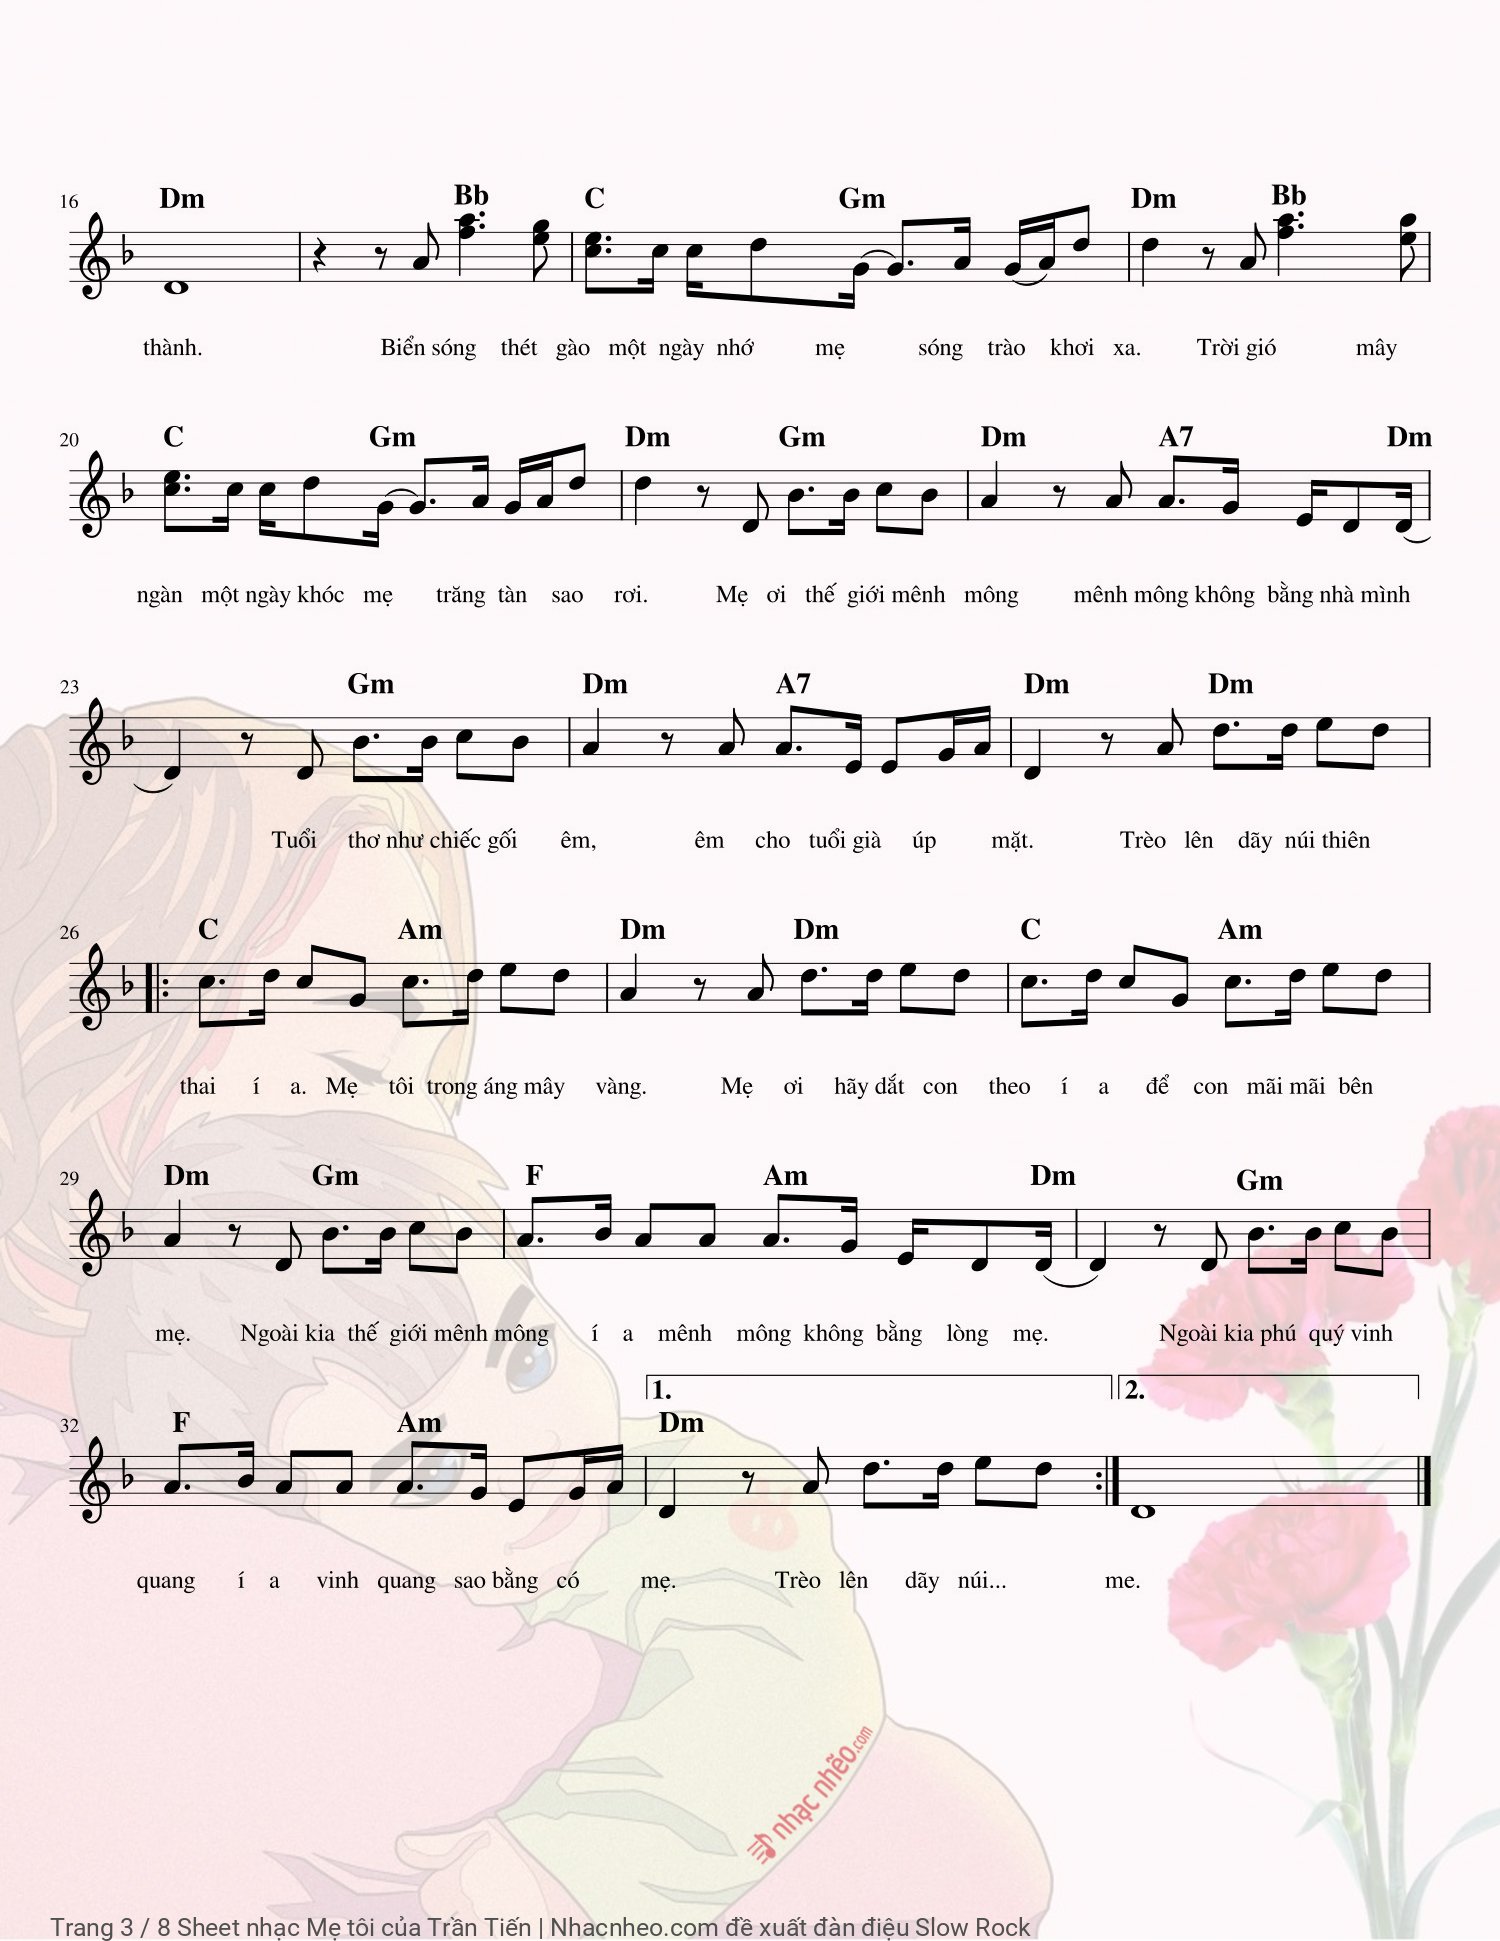 Trang 3 của Sheet nhạc PDF Piano bài hát Mẹ tôi - Trần Tiến